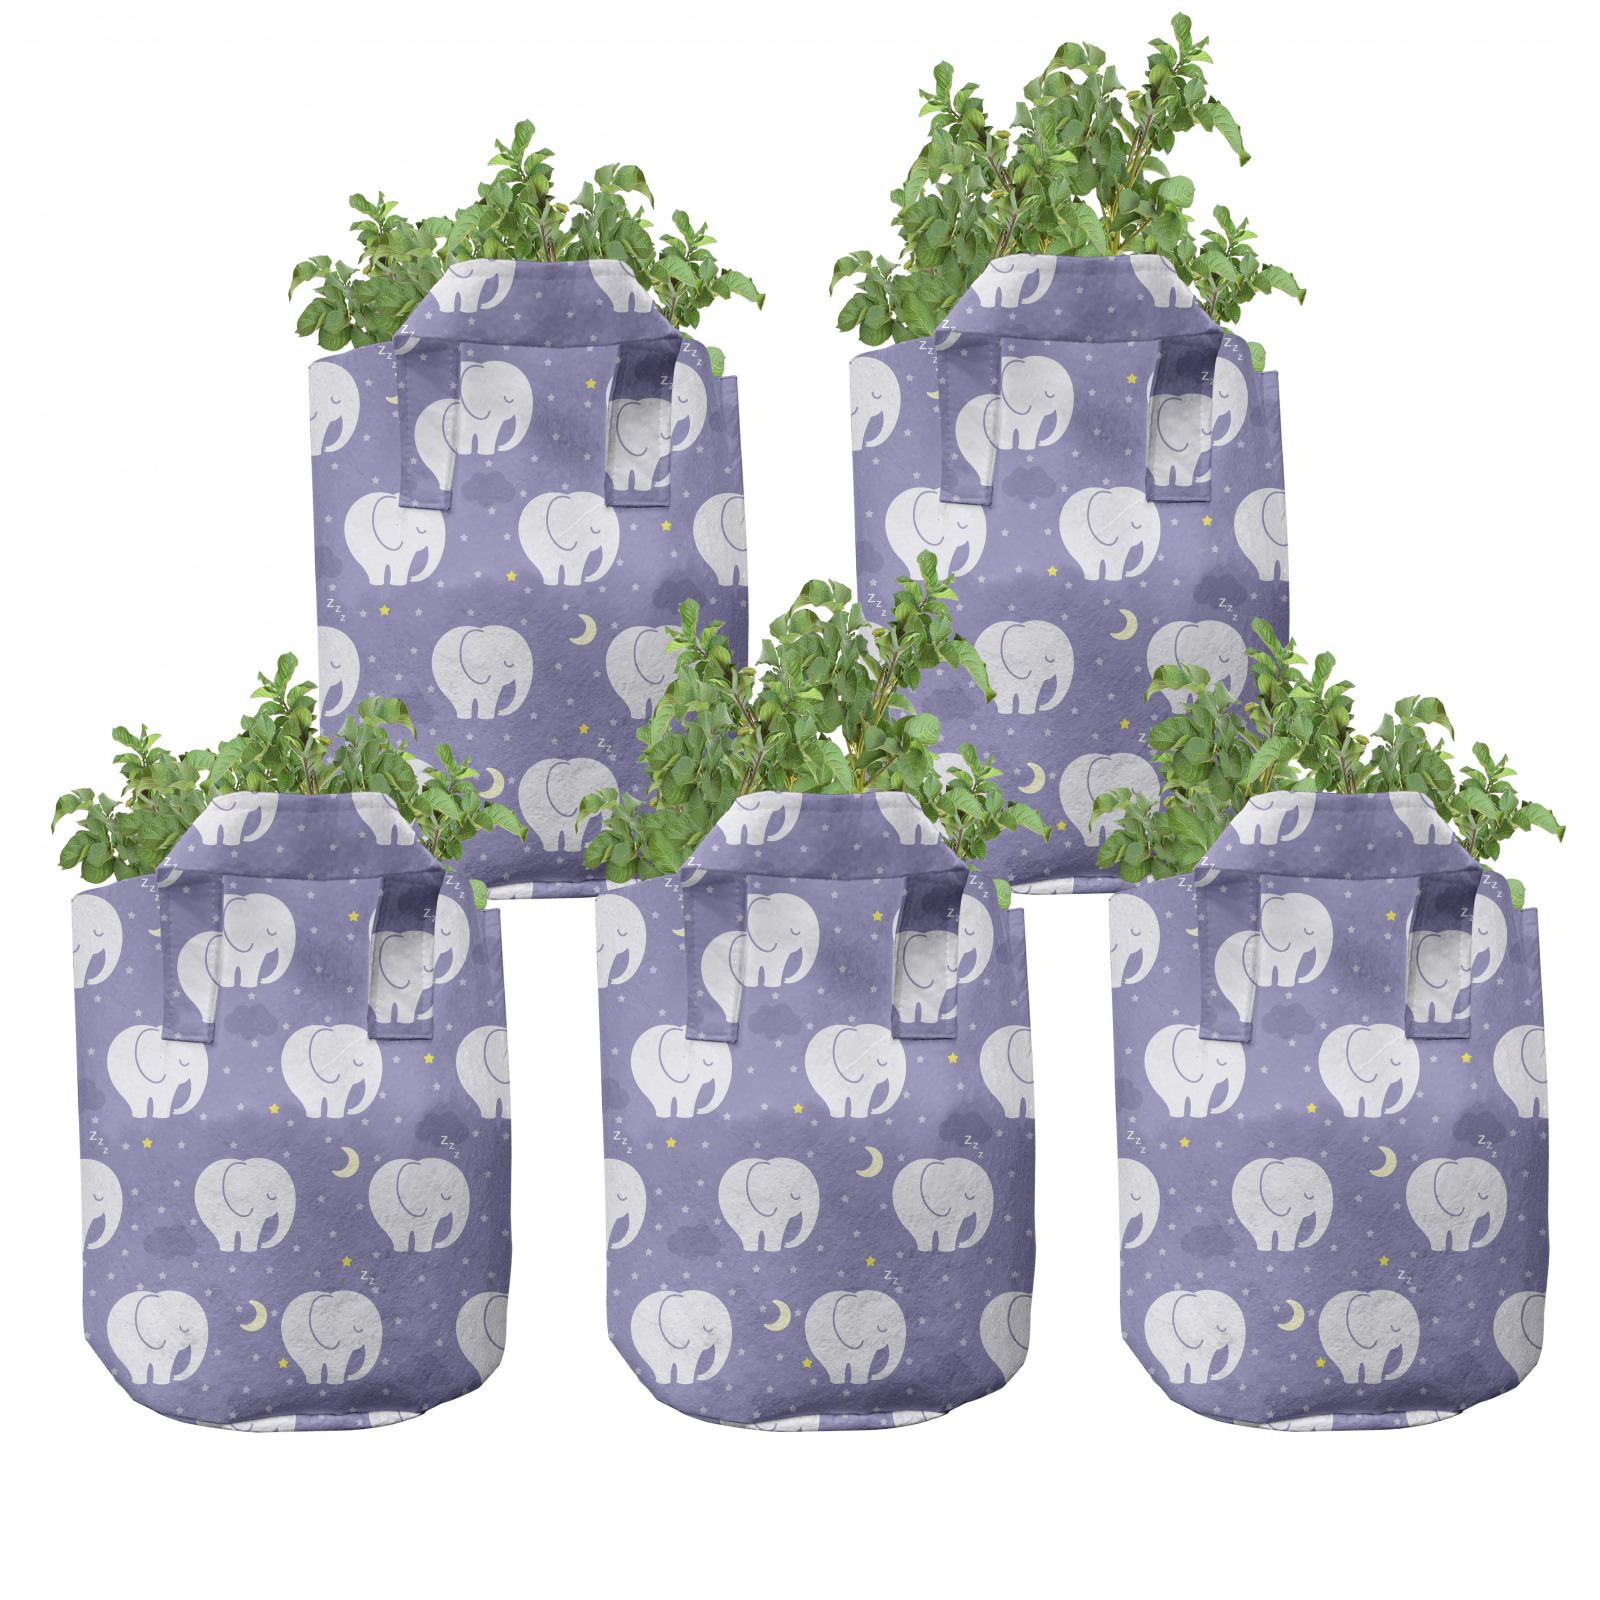 Elefantenohr "Alocasia odora" Dekorative Zimmerpflanze für Geschäftsräume.